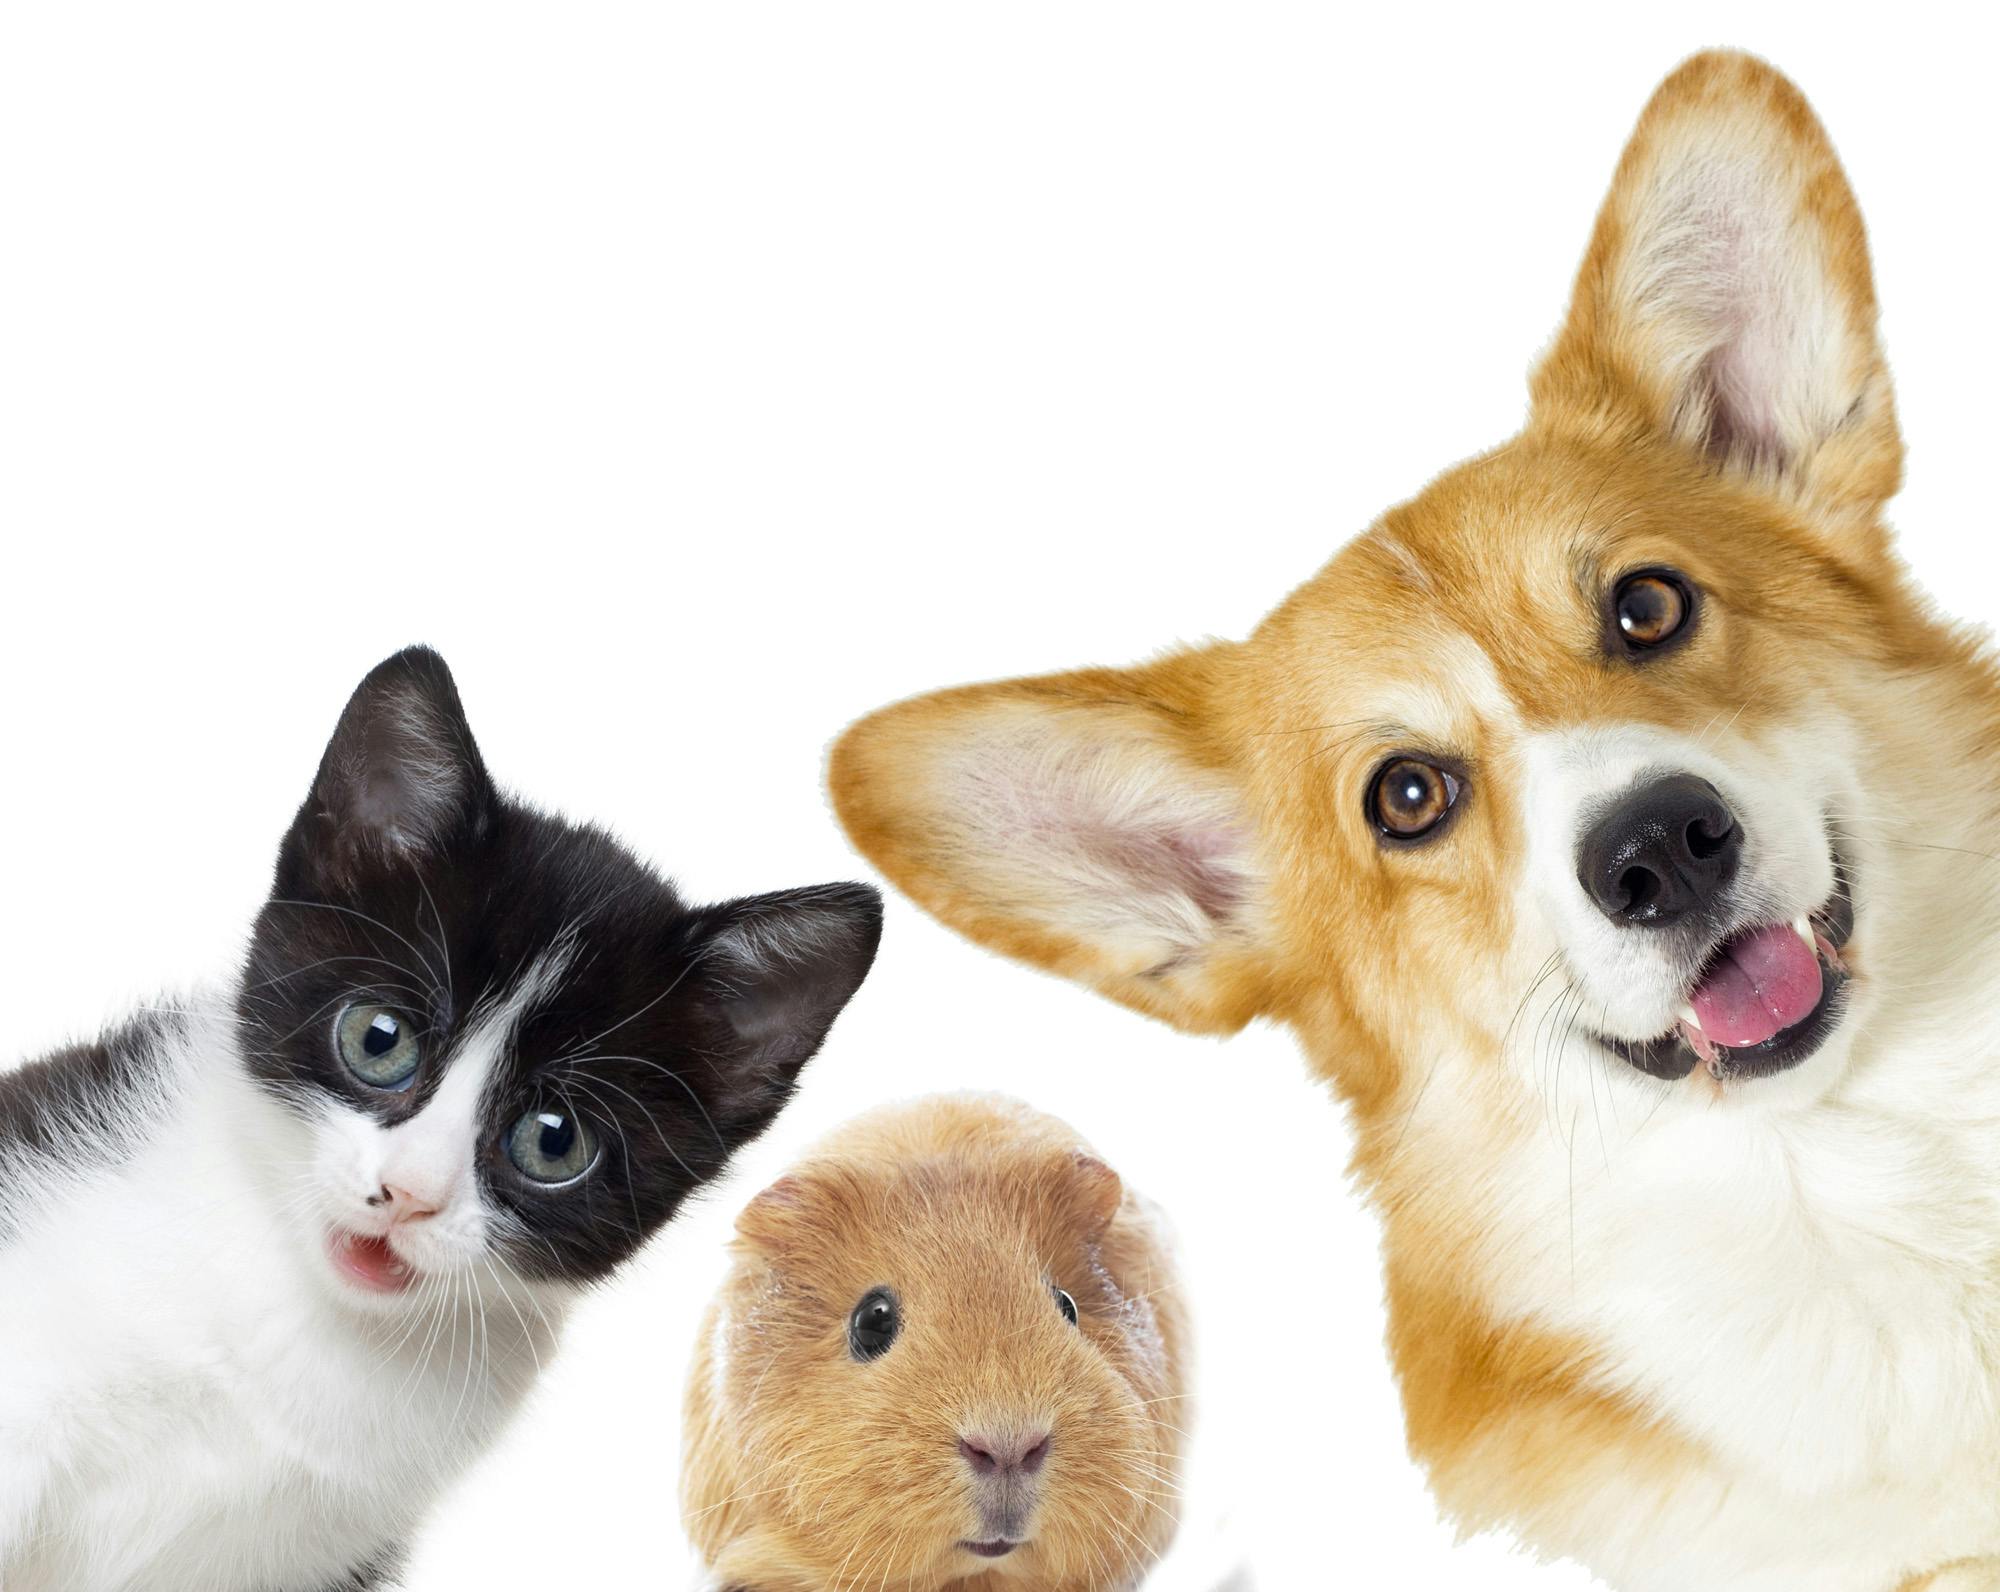 corgi dog, cat, and guinea pig